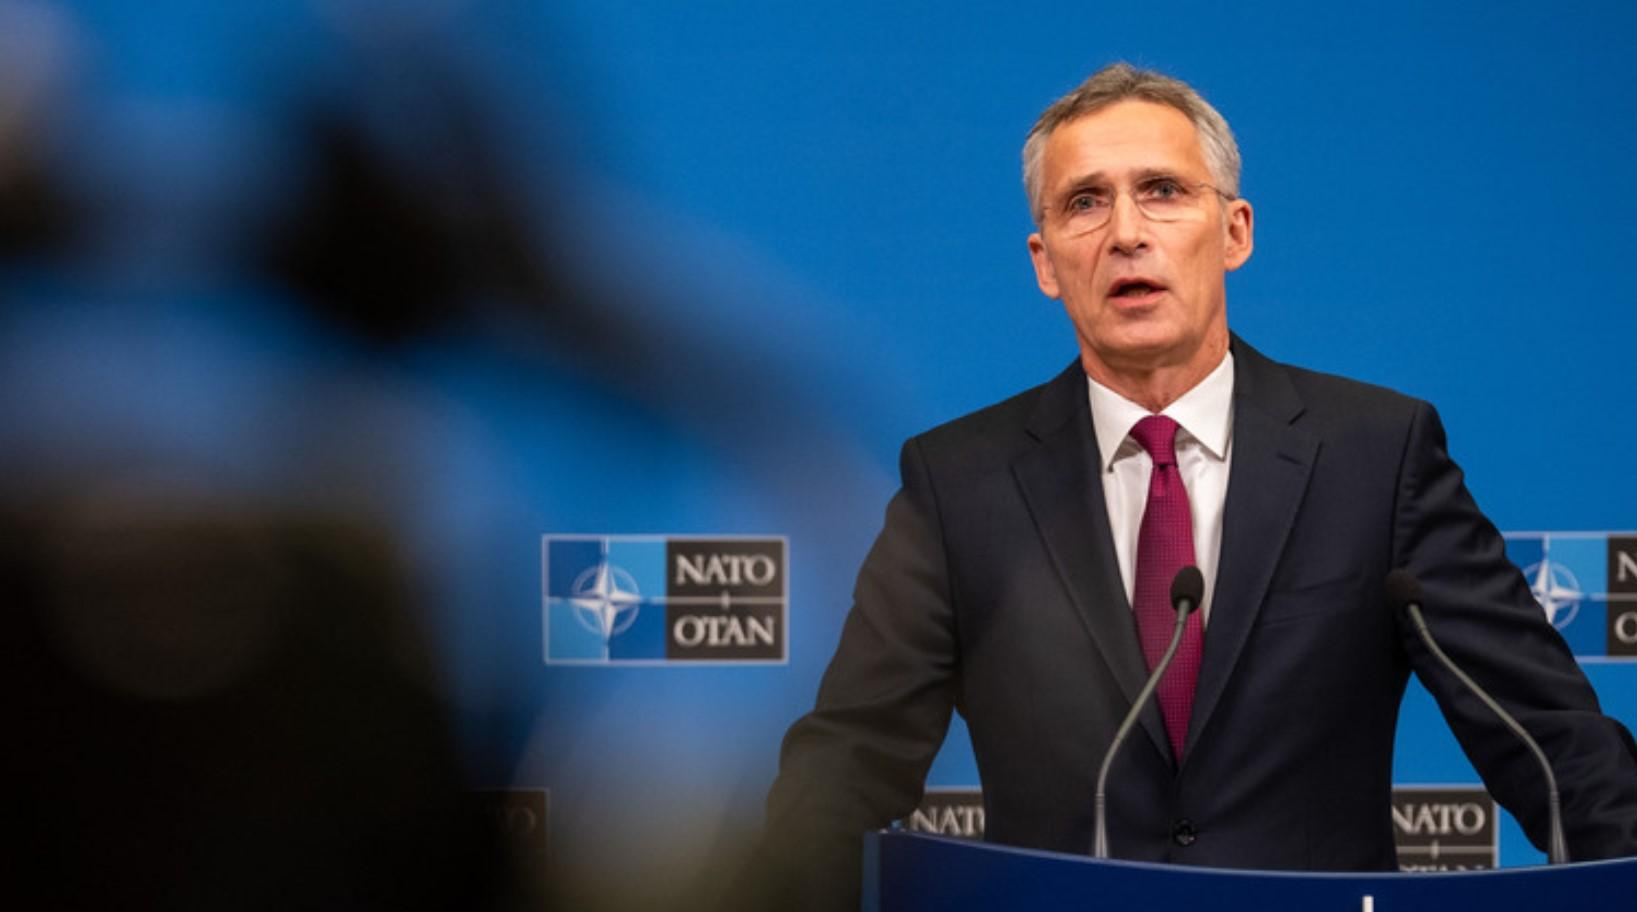 ВСУ с 2014 года стали намного сильнее, – генсек НАТО